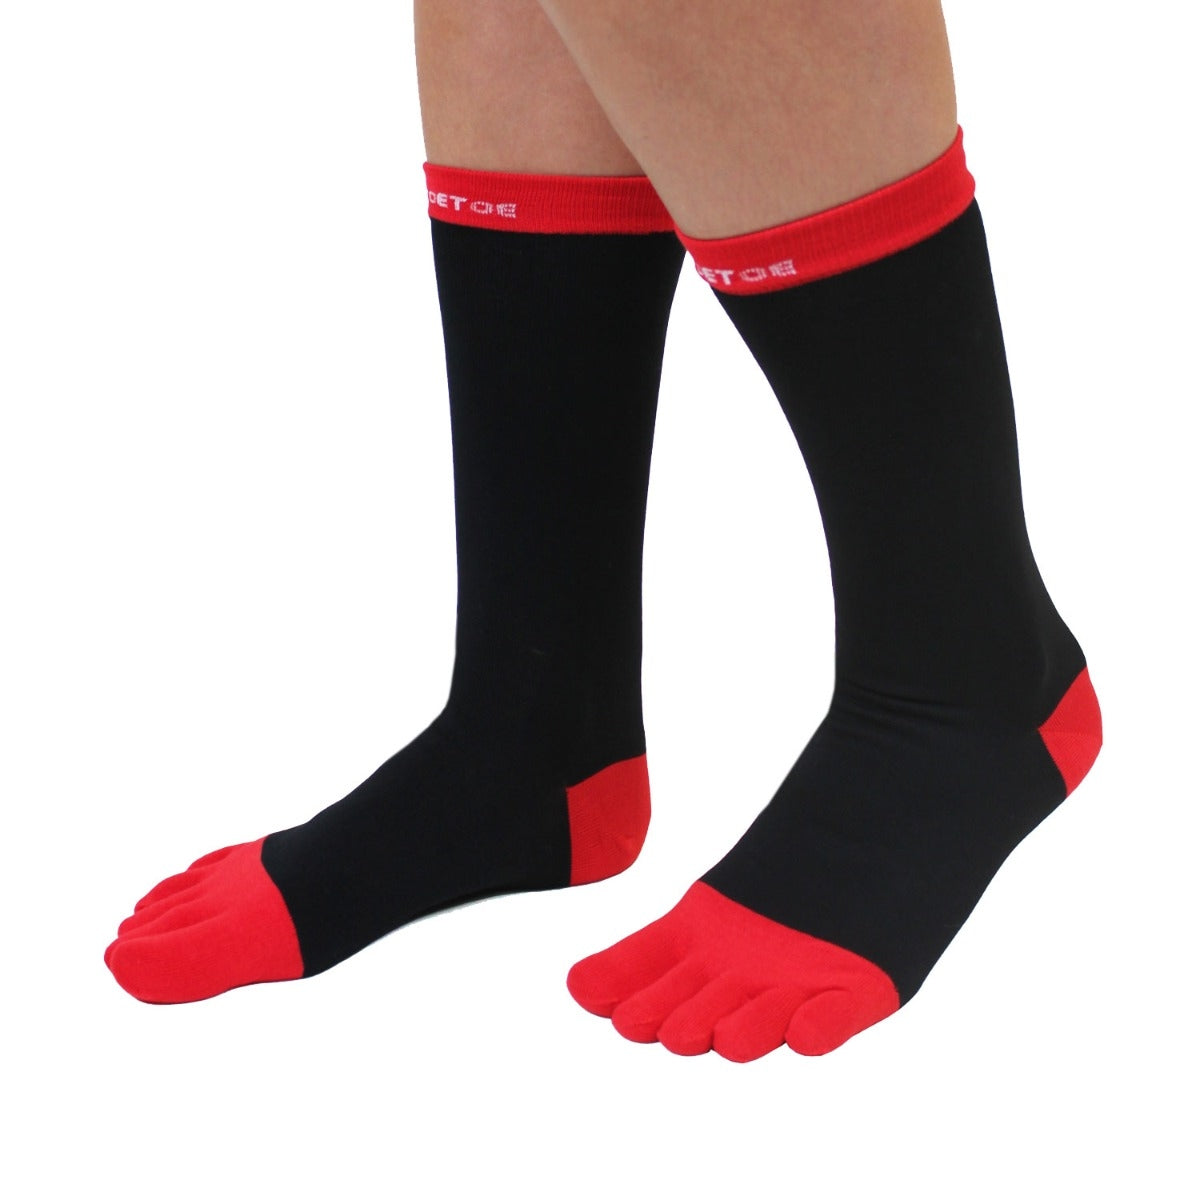 Toe Socks Mens Business Black/Red